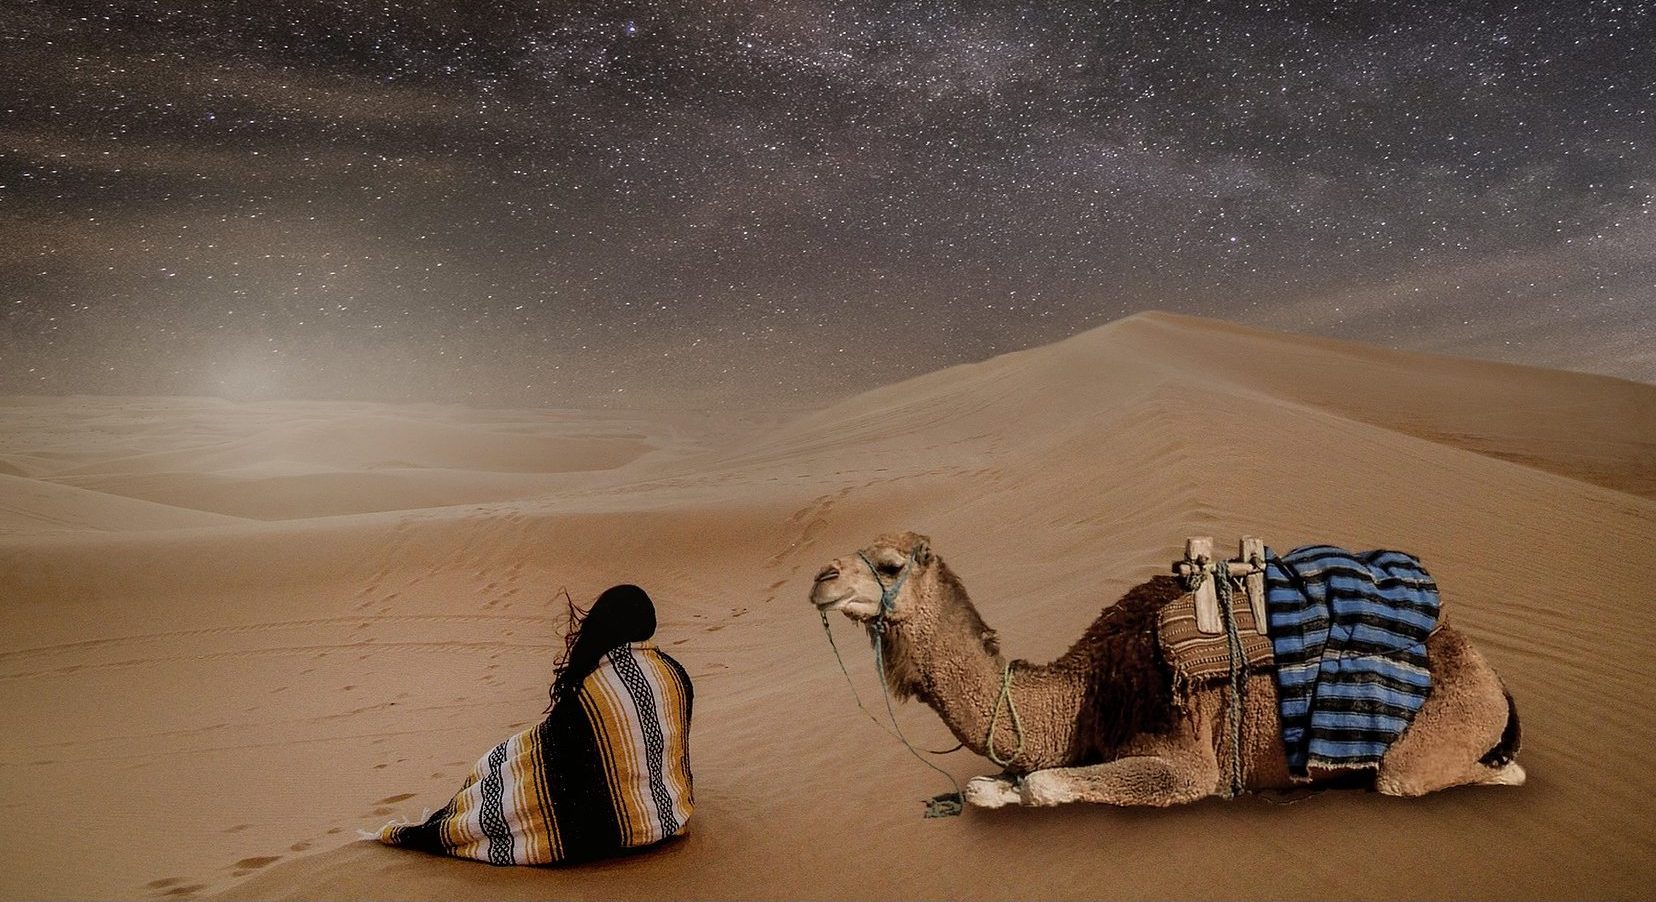 Dormir en el desierto: una aventura desde Marrakech | Blog BuscoUnViaje